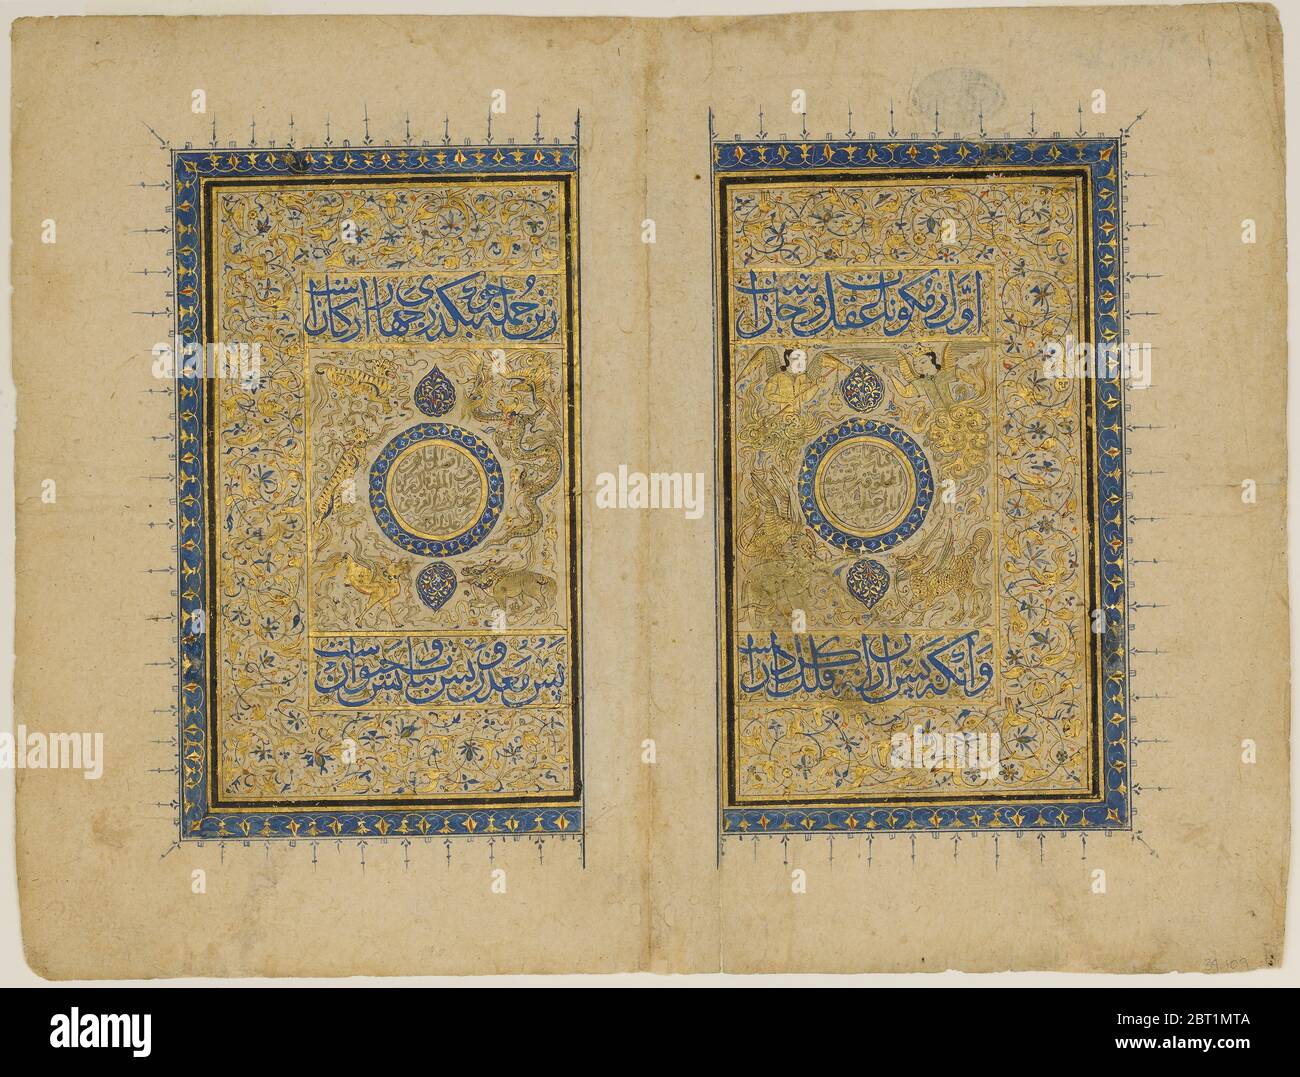 Doppio titolo pagina da a 'Ajaa'ib al-Makhluqat wa Gharaa'ib al-Mawjudat (le meraviglie della creazione e le Oddities dell'esistenza), 1414-35. Foto Stock